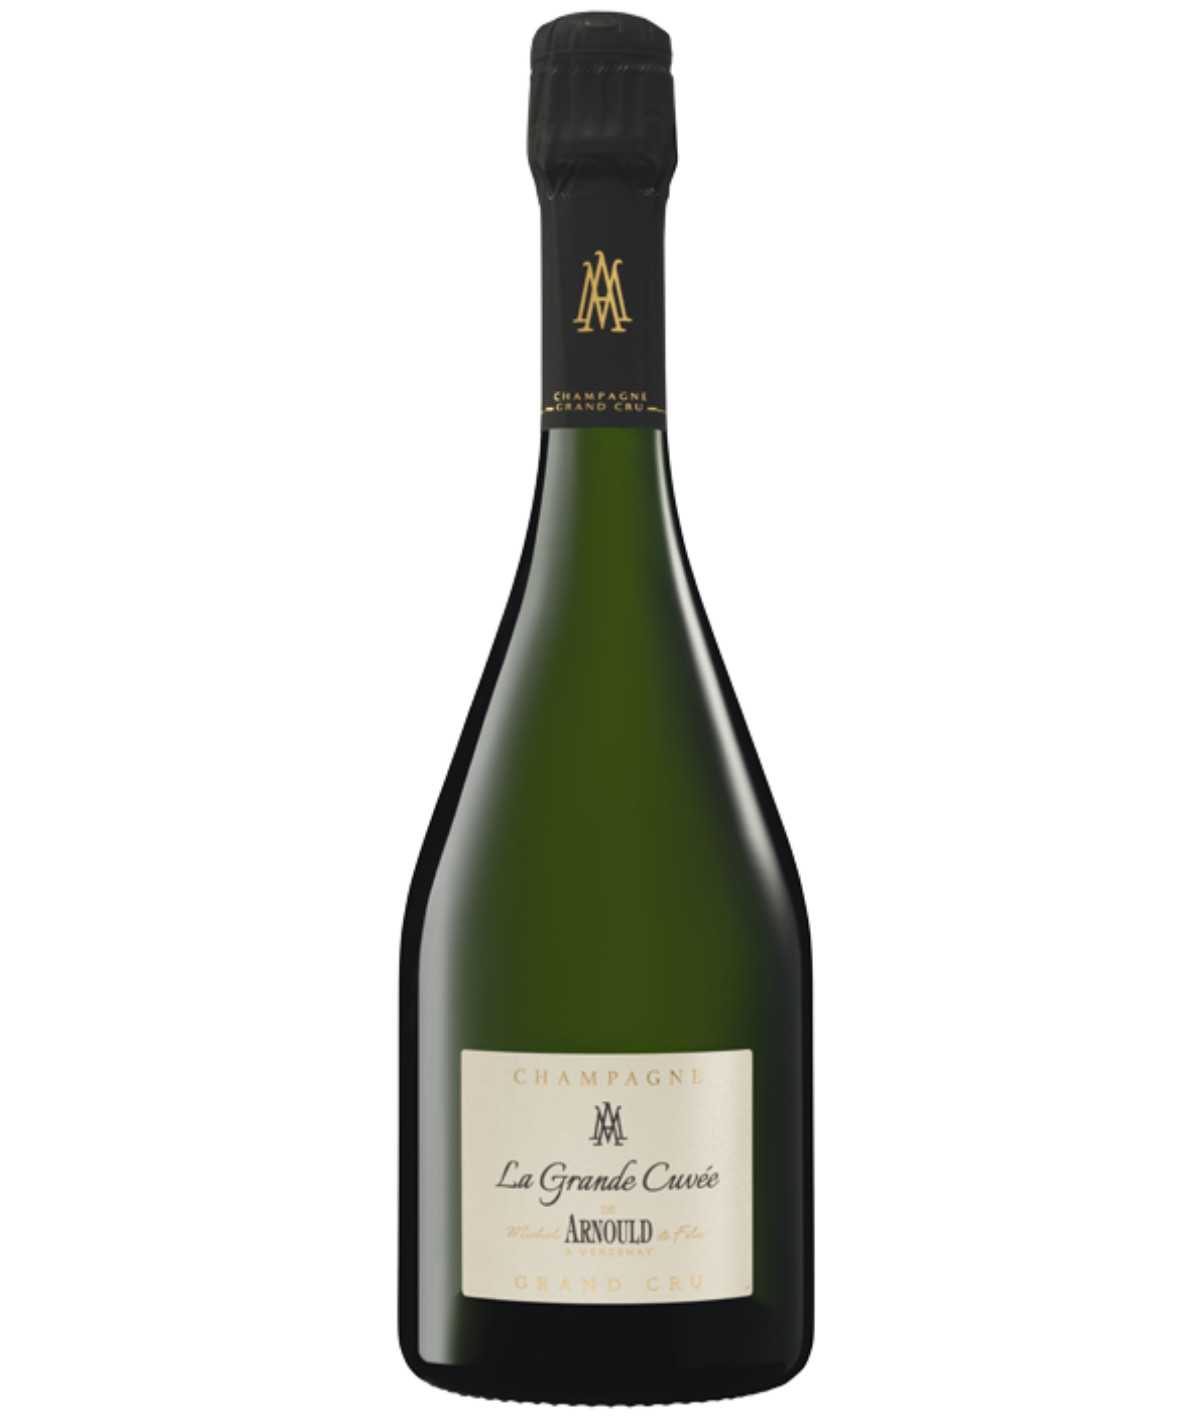 MICHEL ARNOULD champagne La grande Cuvée Grand Cru